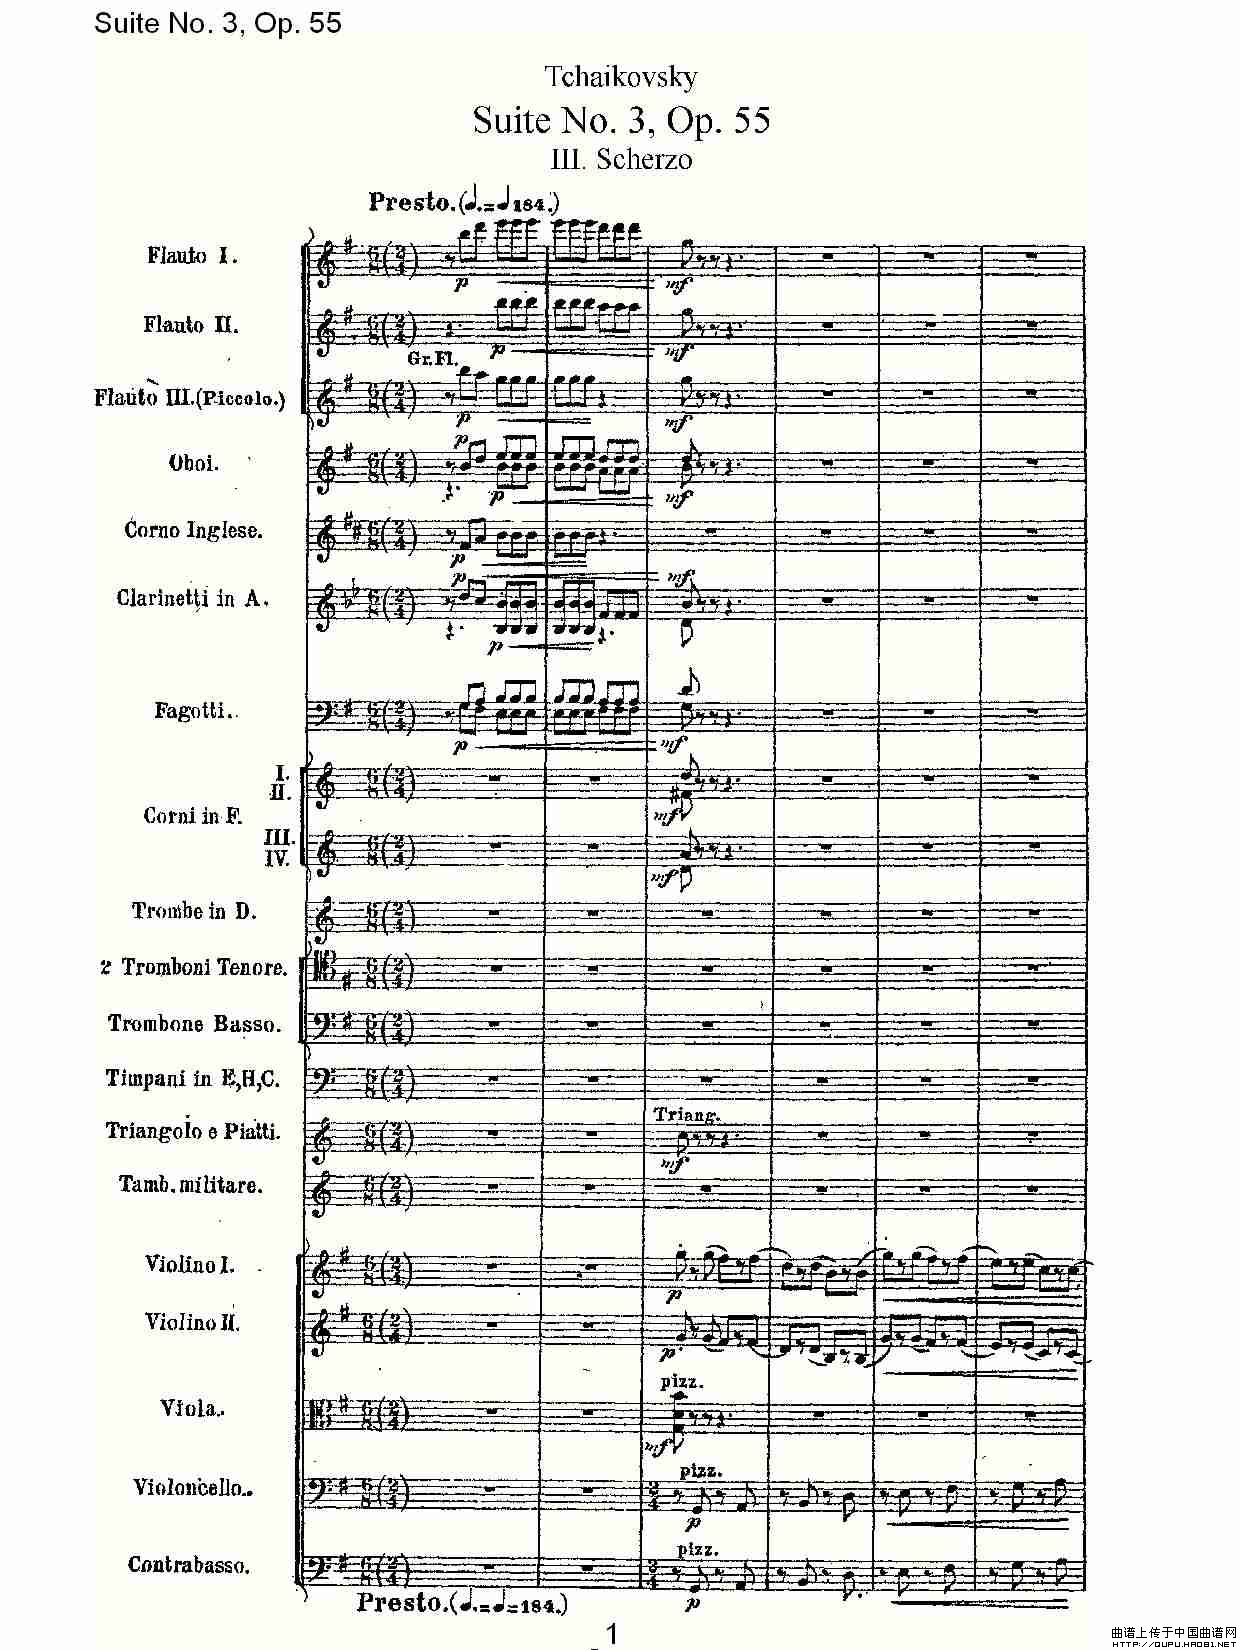 Suite No. 3, Op.55  第三套曲,Op.55第三乐章（一）